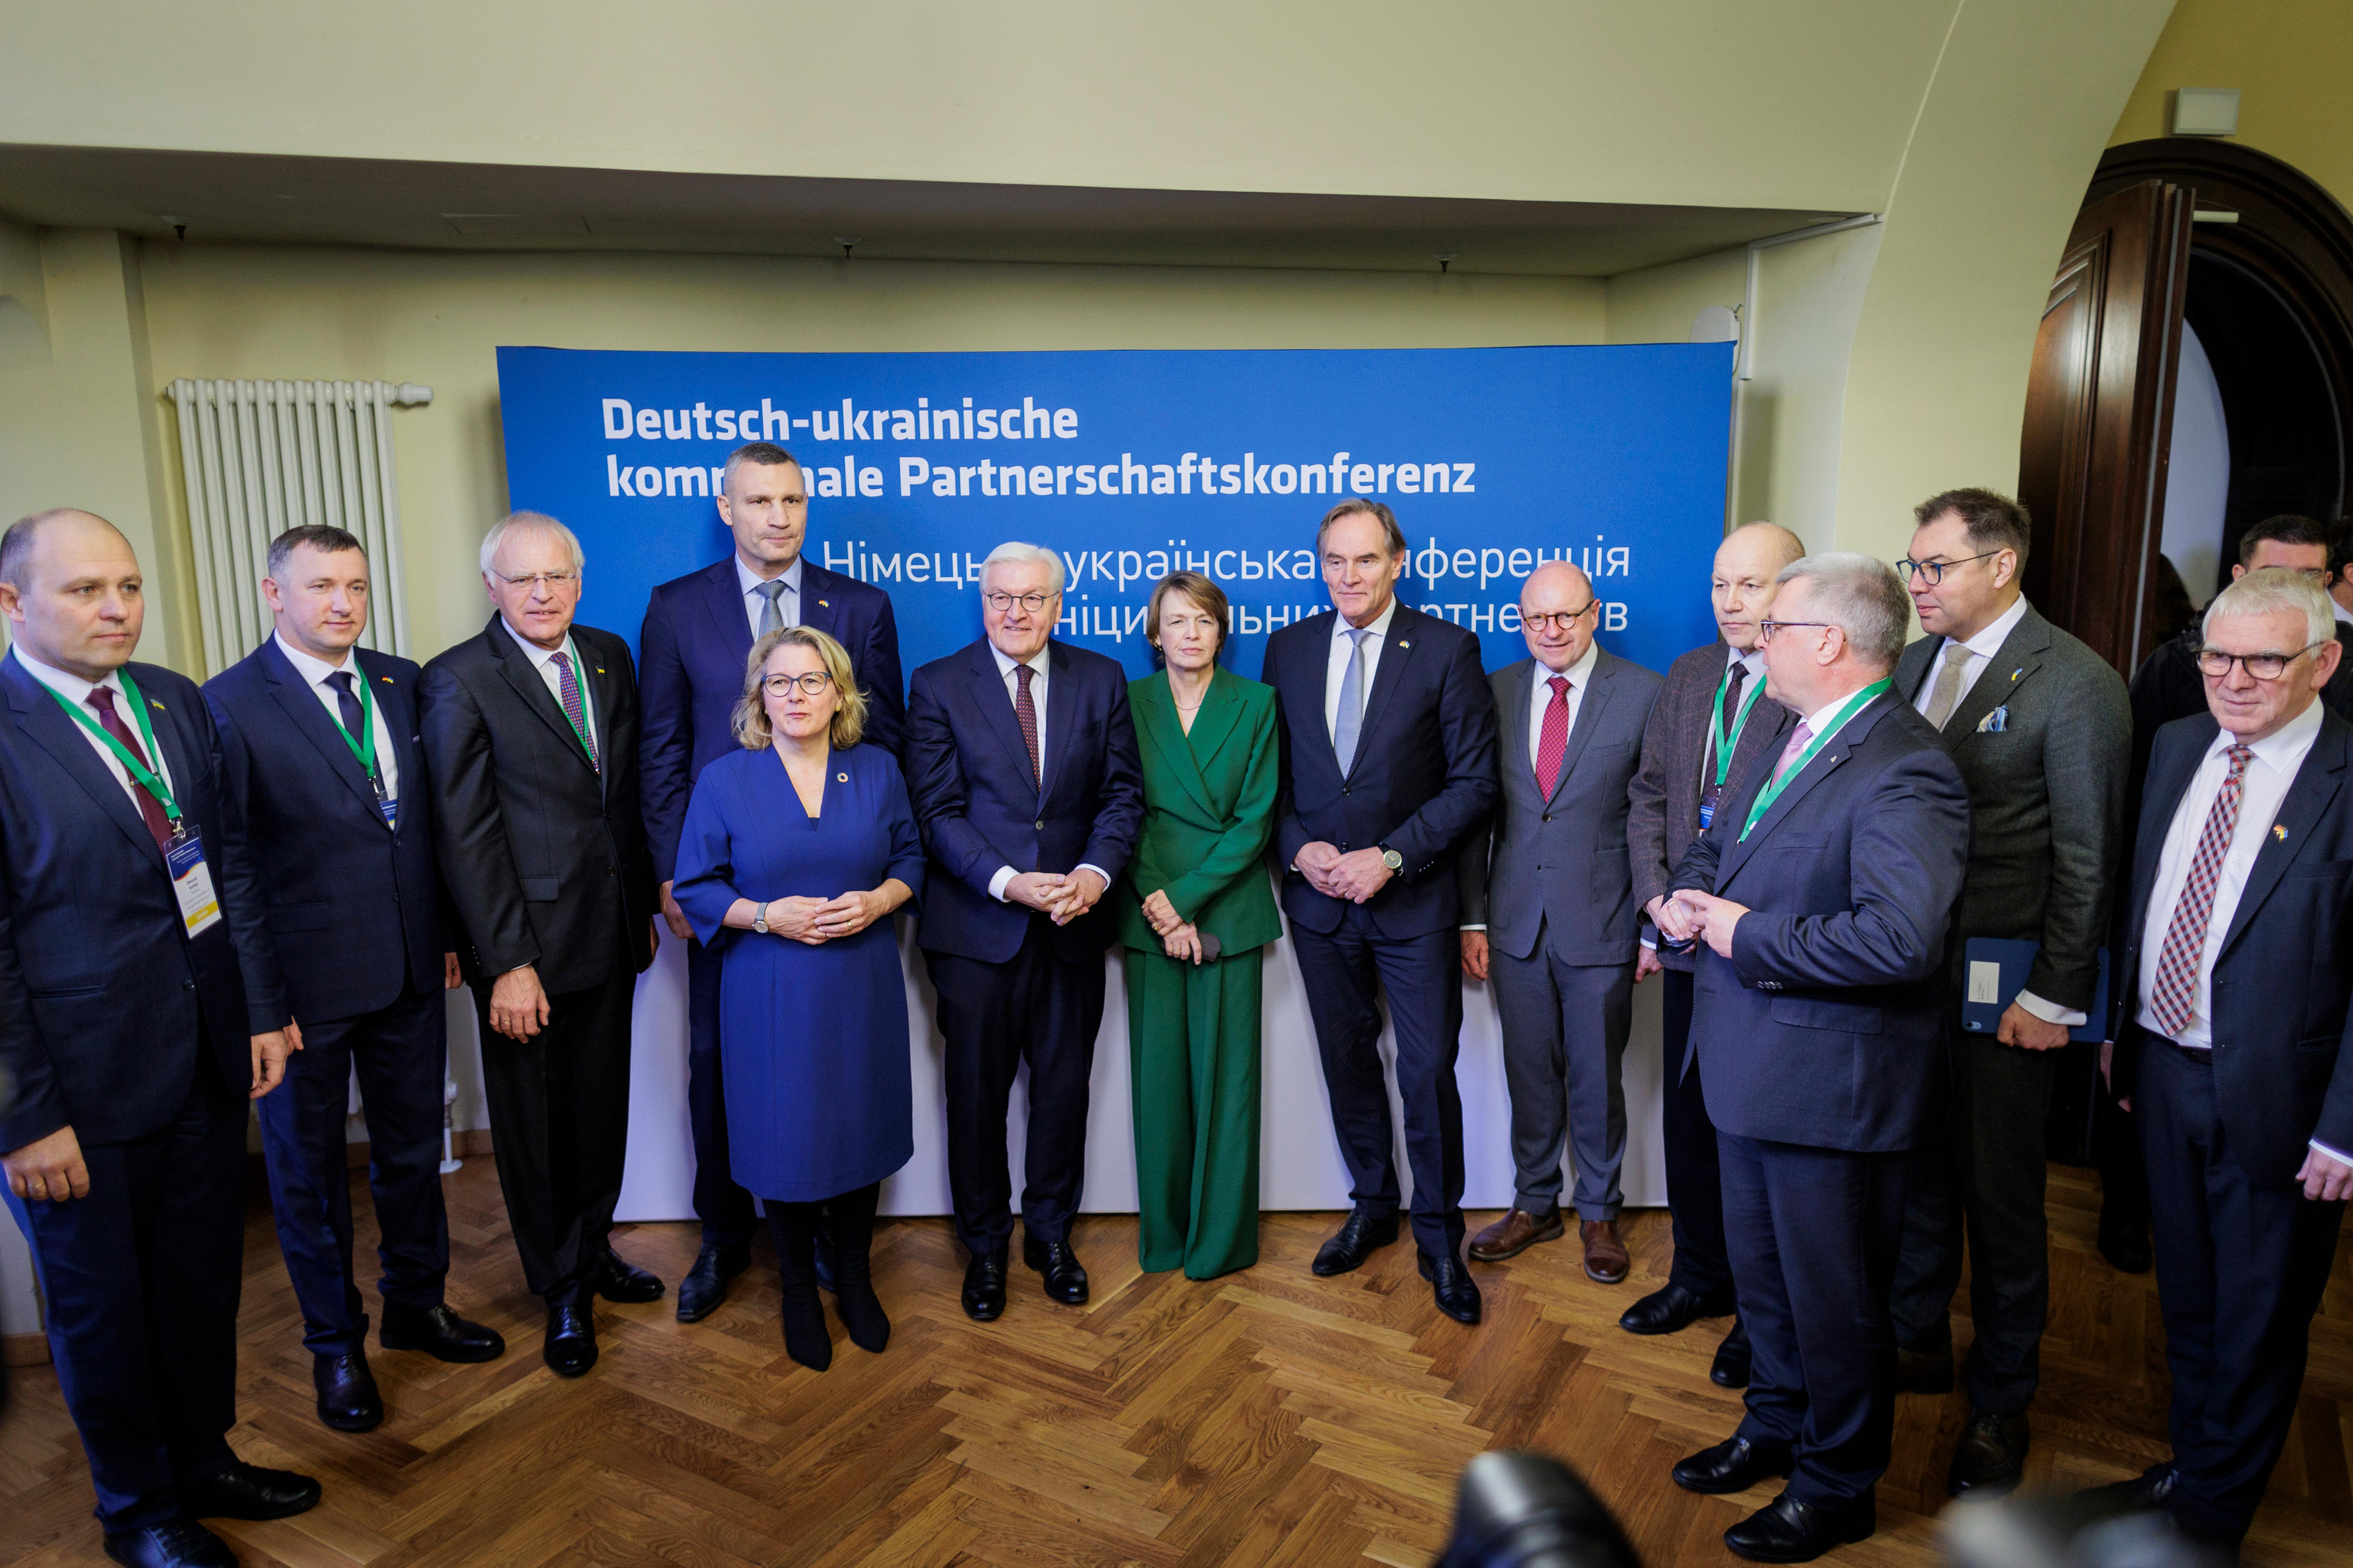 Bundespräsident Frank-Walter Steinmeier mit Teilnehmerinnen und Teilnehmern der deutsch-ukrainischen kommunalen Partnerschaftskonferenz